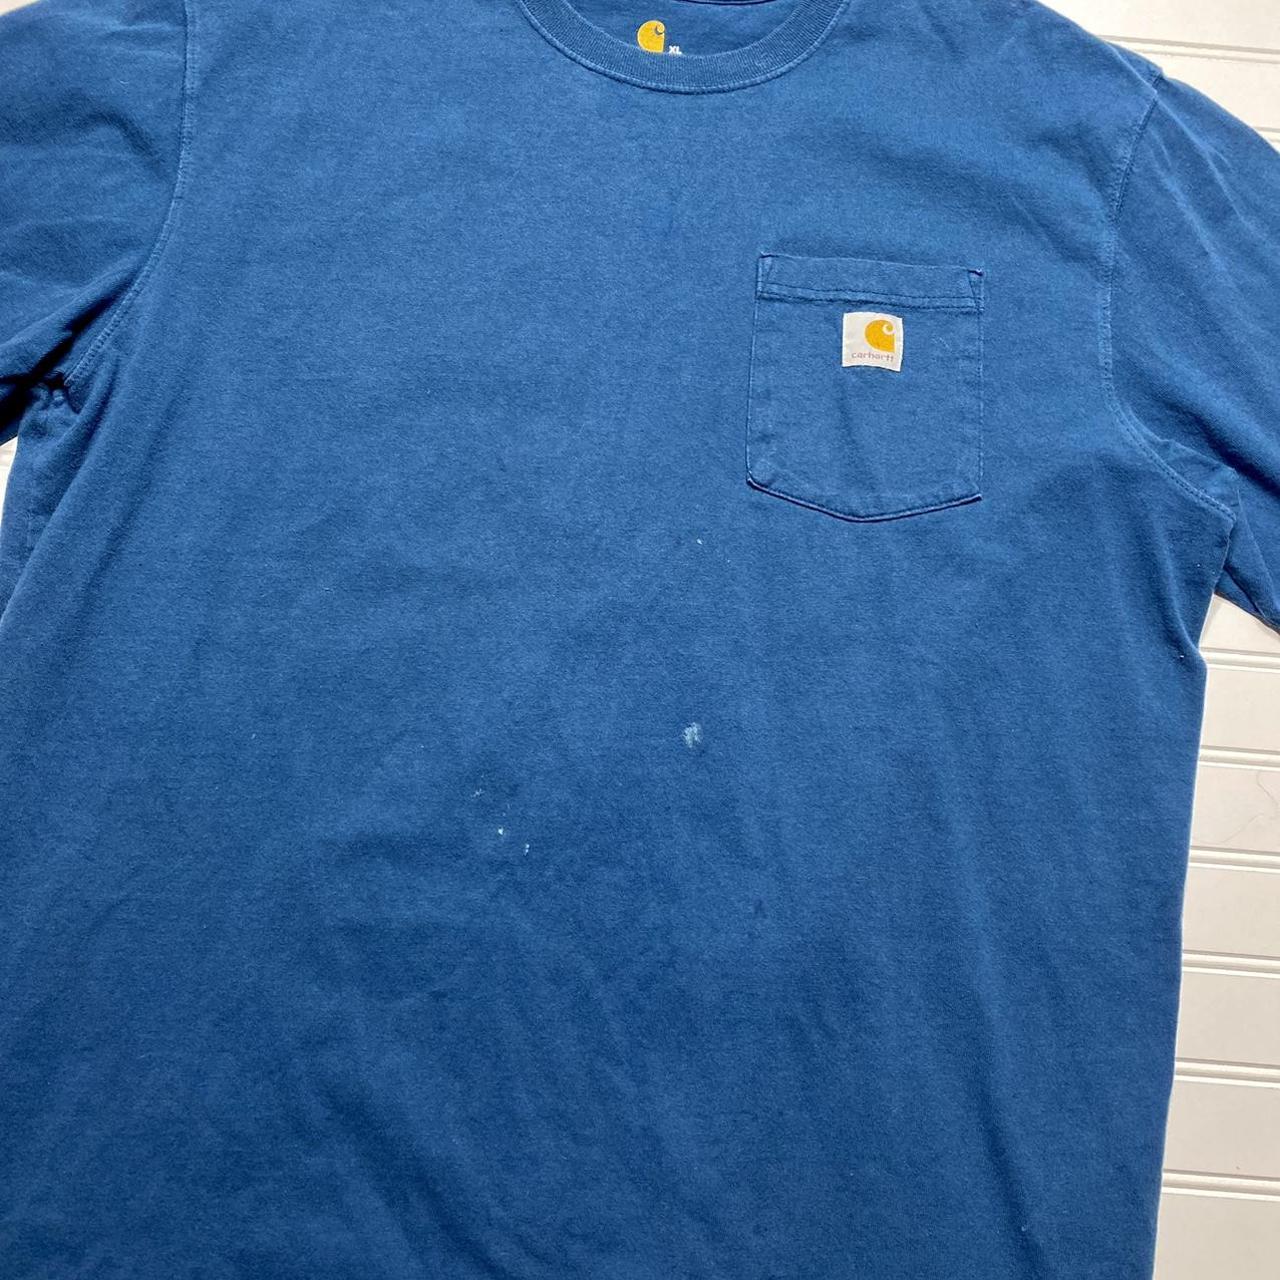 Carhartt Men's Blue T-shirt | Depop